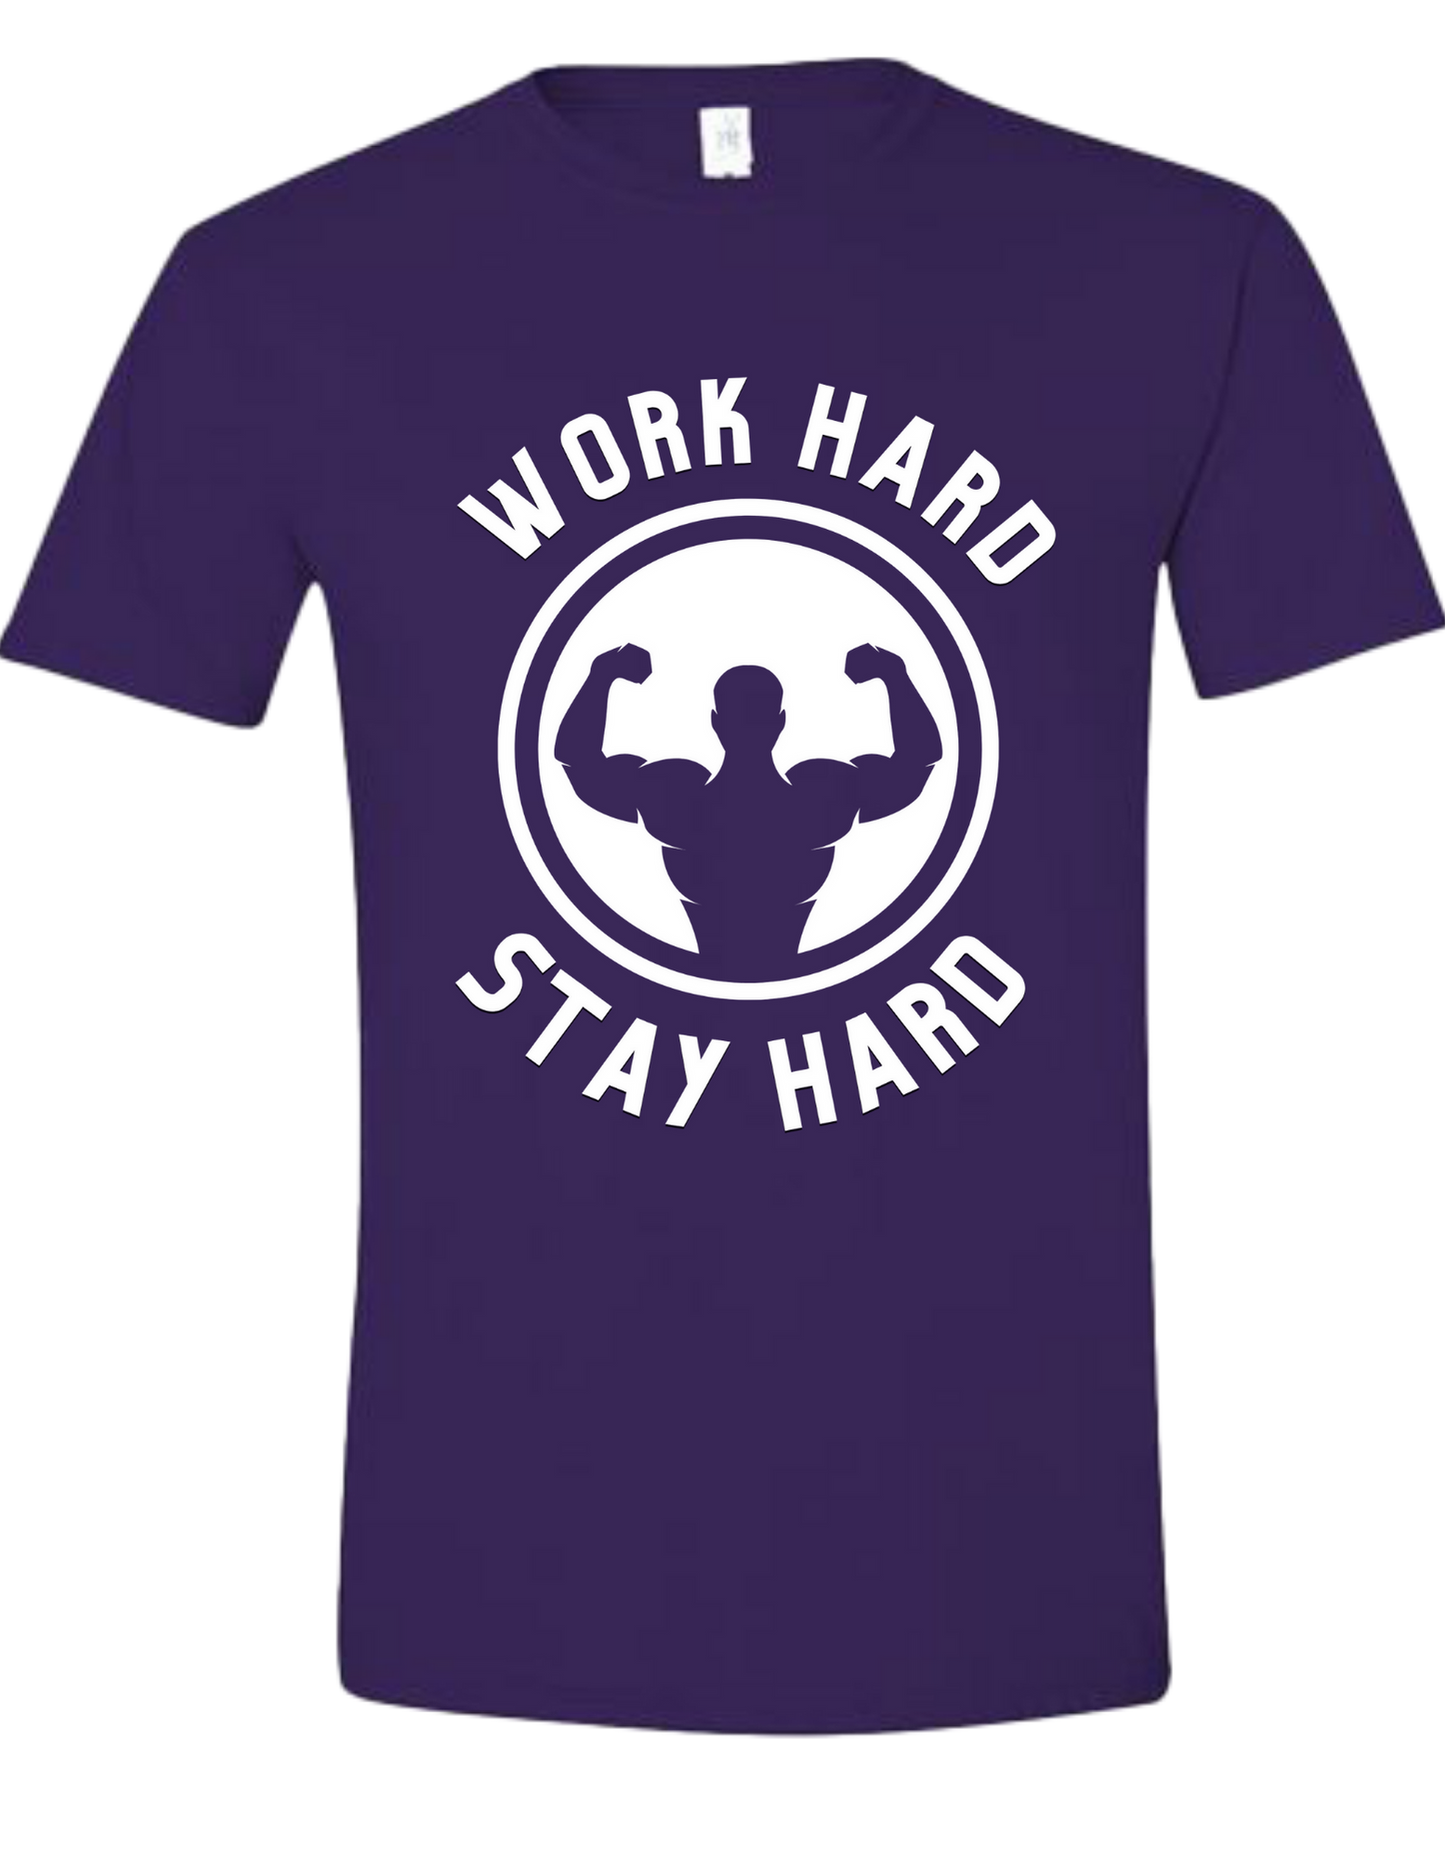 Work Hard Stay Hard -